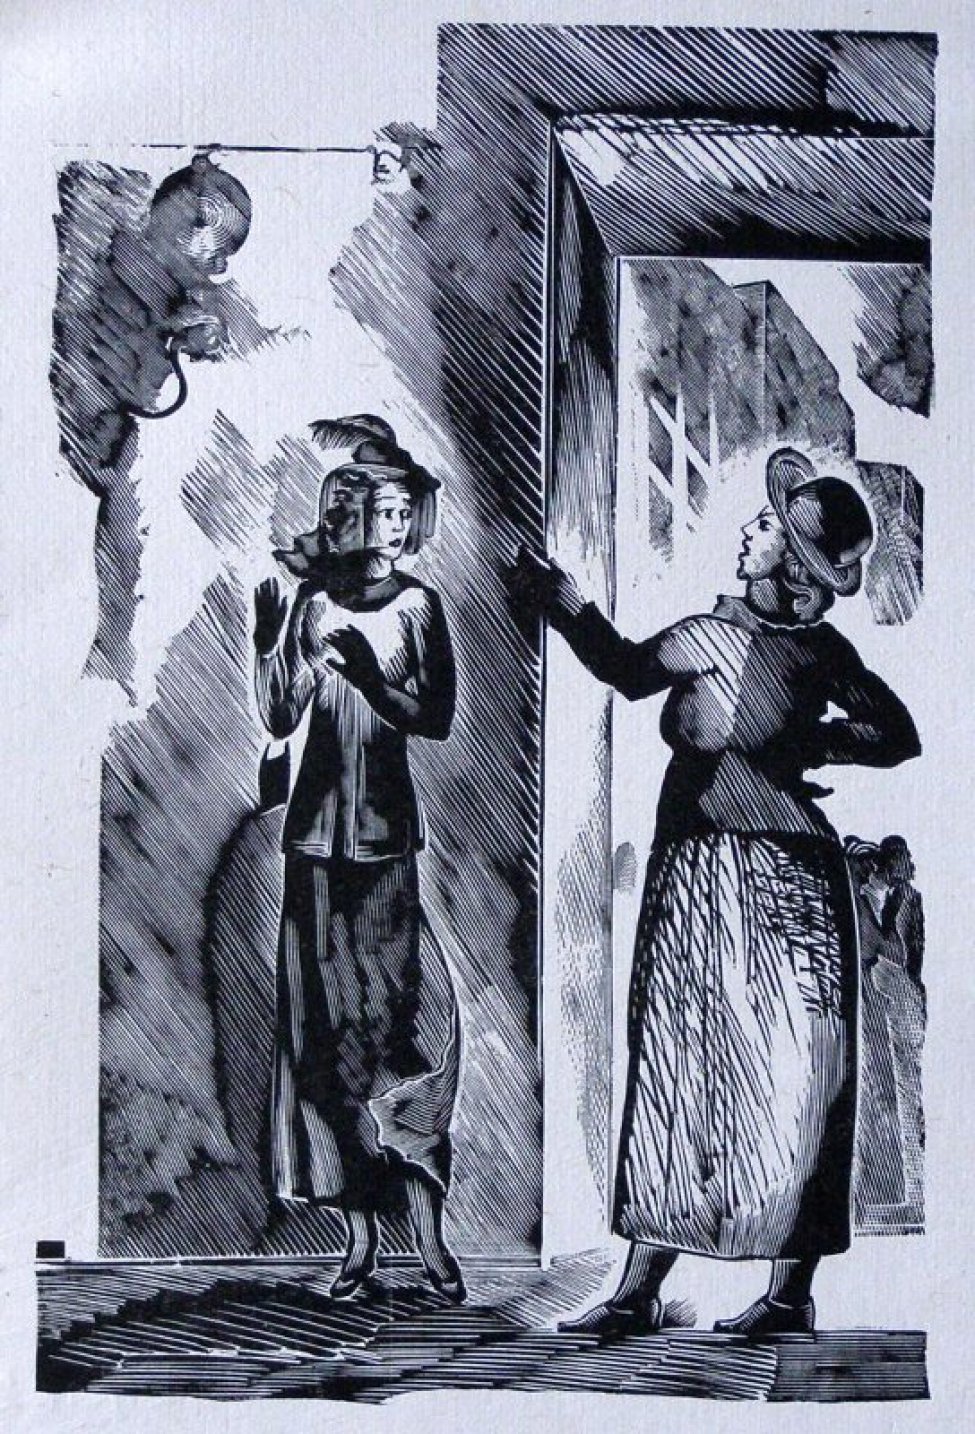 В центре композиции изображены две женщины: одна в шляпке с вуалью, с сумочкой. Вторая в шляпке с маленькими полями одна рука у нее поднята, вторая лежит на бедре, задний фон образует стена с открытой дверью, через которую видны фигуры людей.